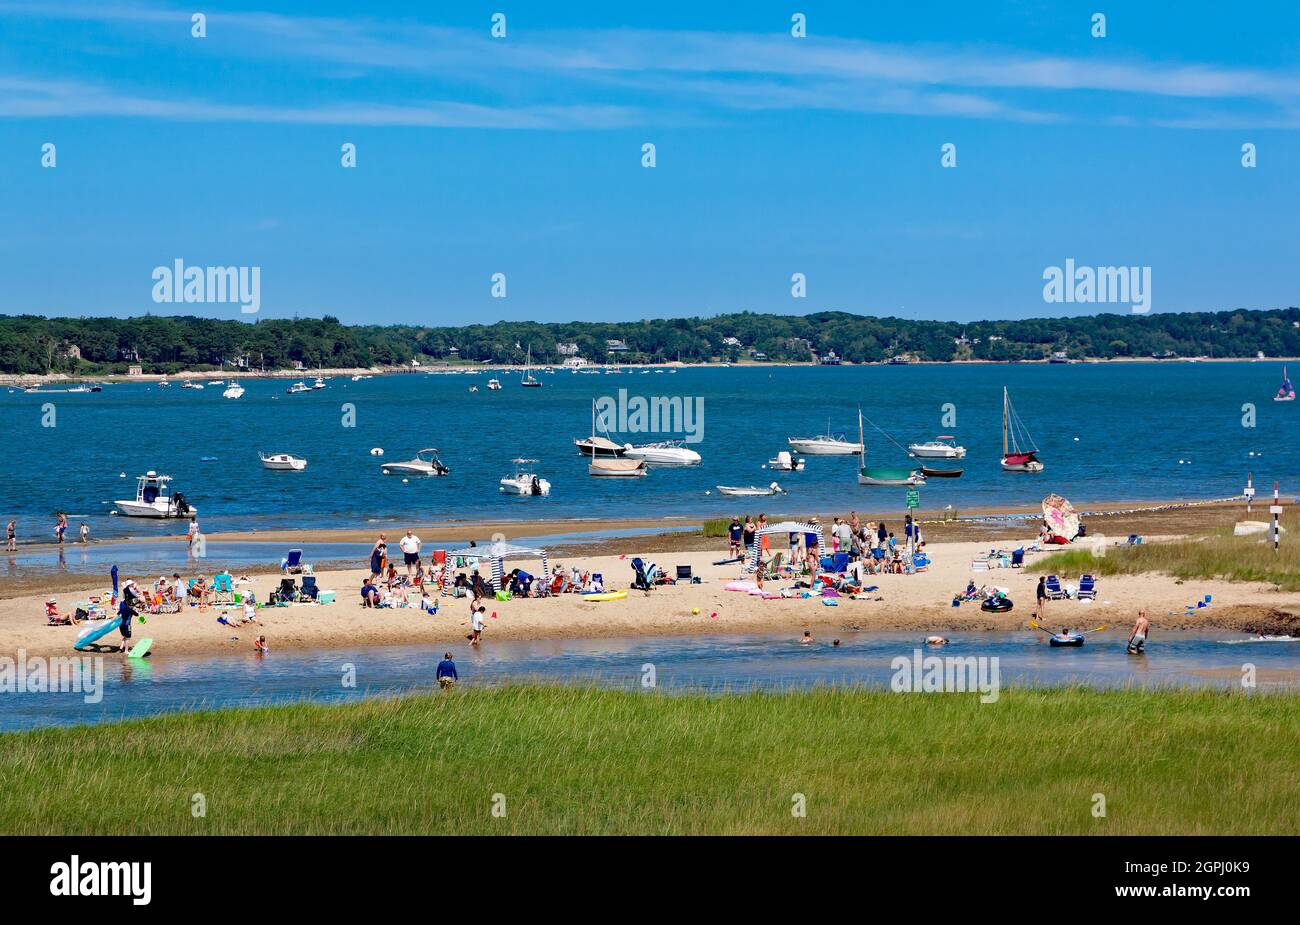 La plage de Jackife Cove de Pleasant Bay attire les amoureux du soleil et les vacanciers dans son emplacement tranquille et pittoresque à Chatham, Massachusetts. Banque D'Images